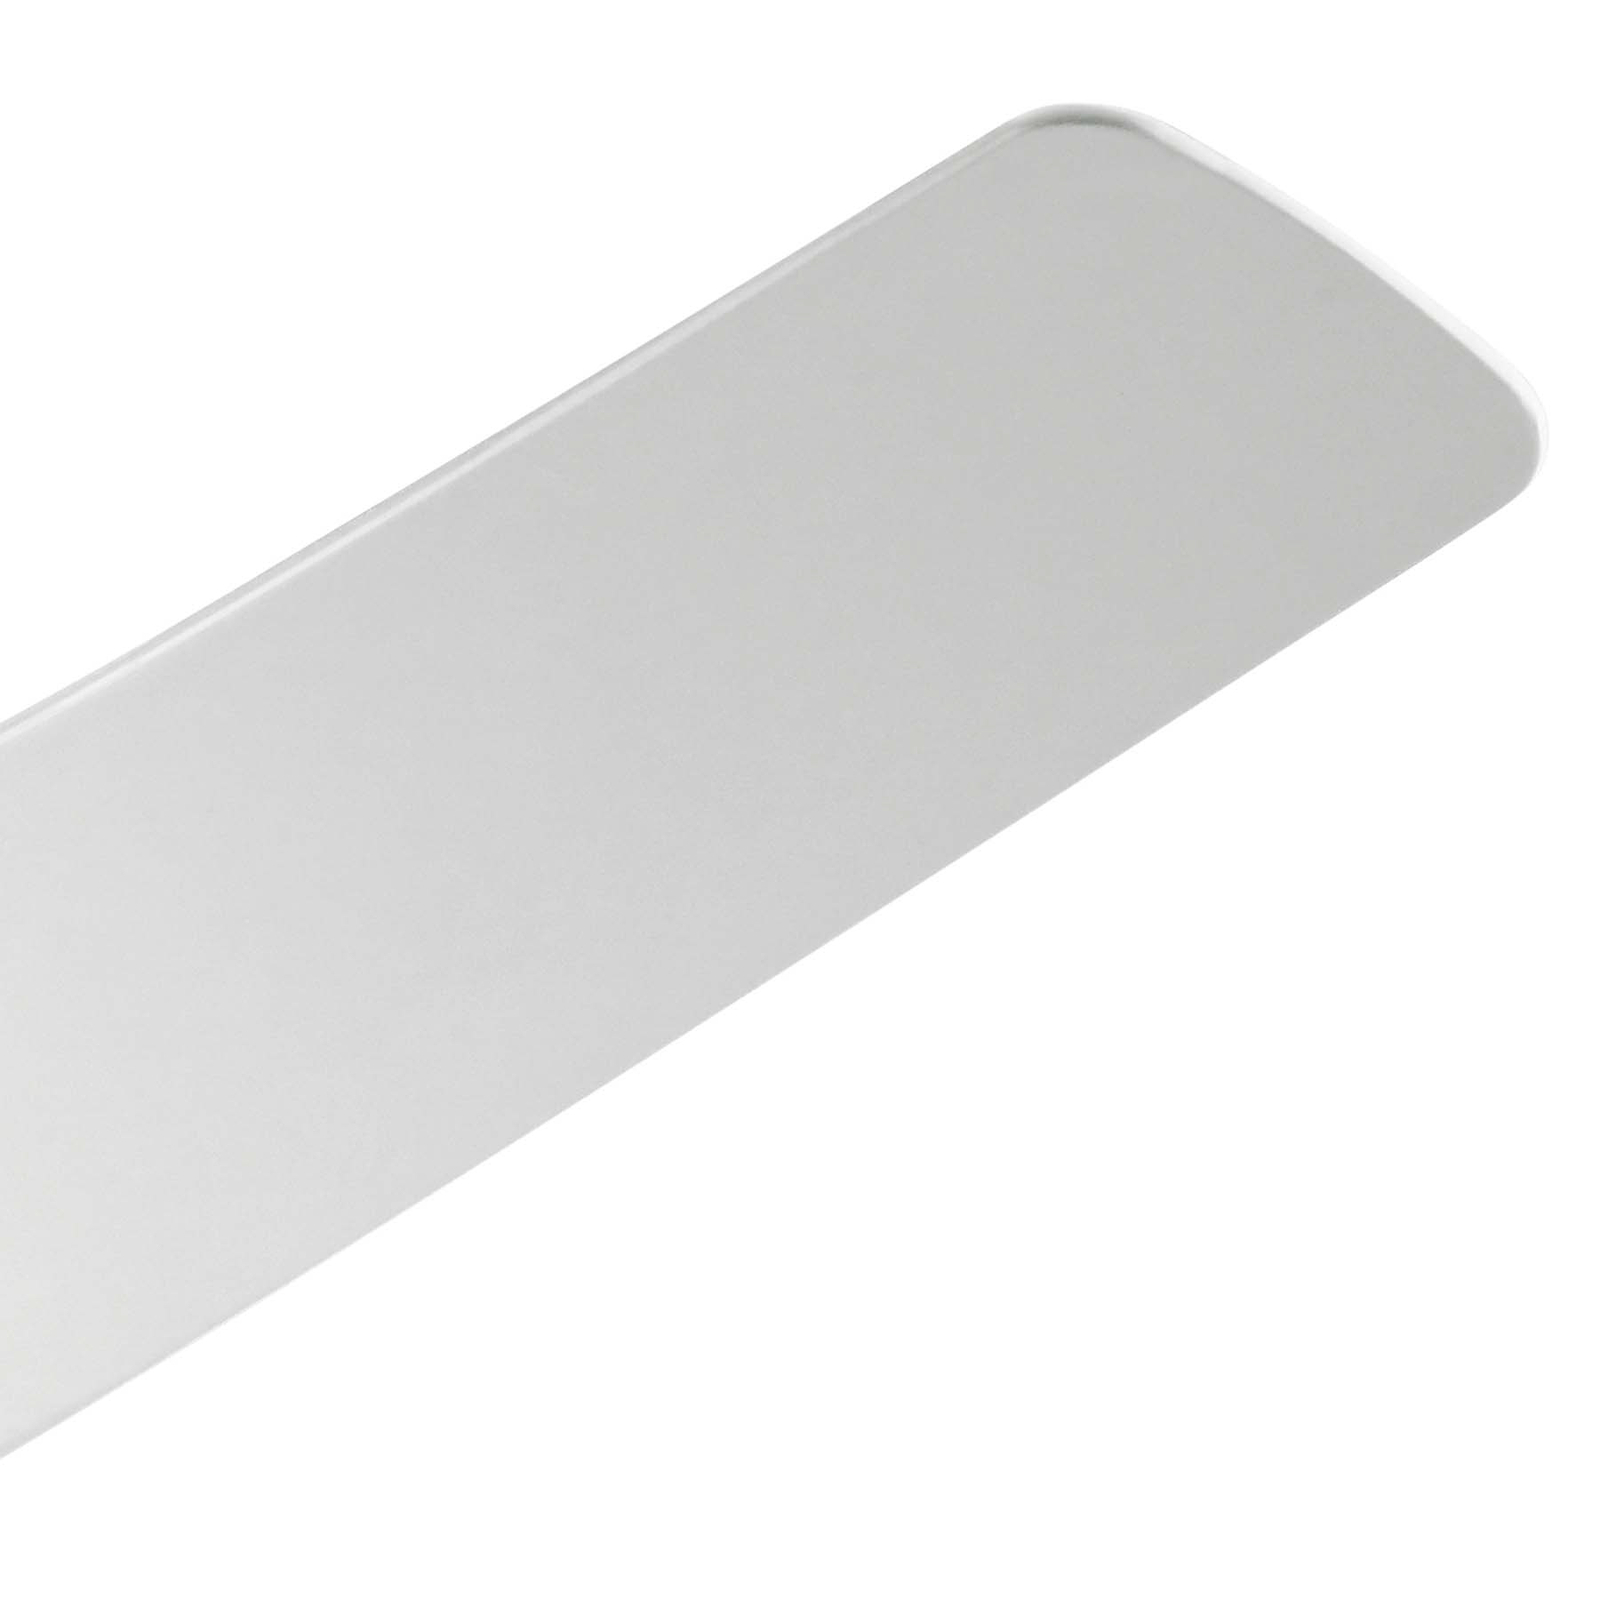 LED ceiling fan Phree 56, three-blade, white